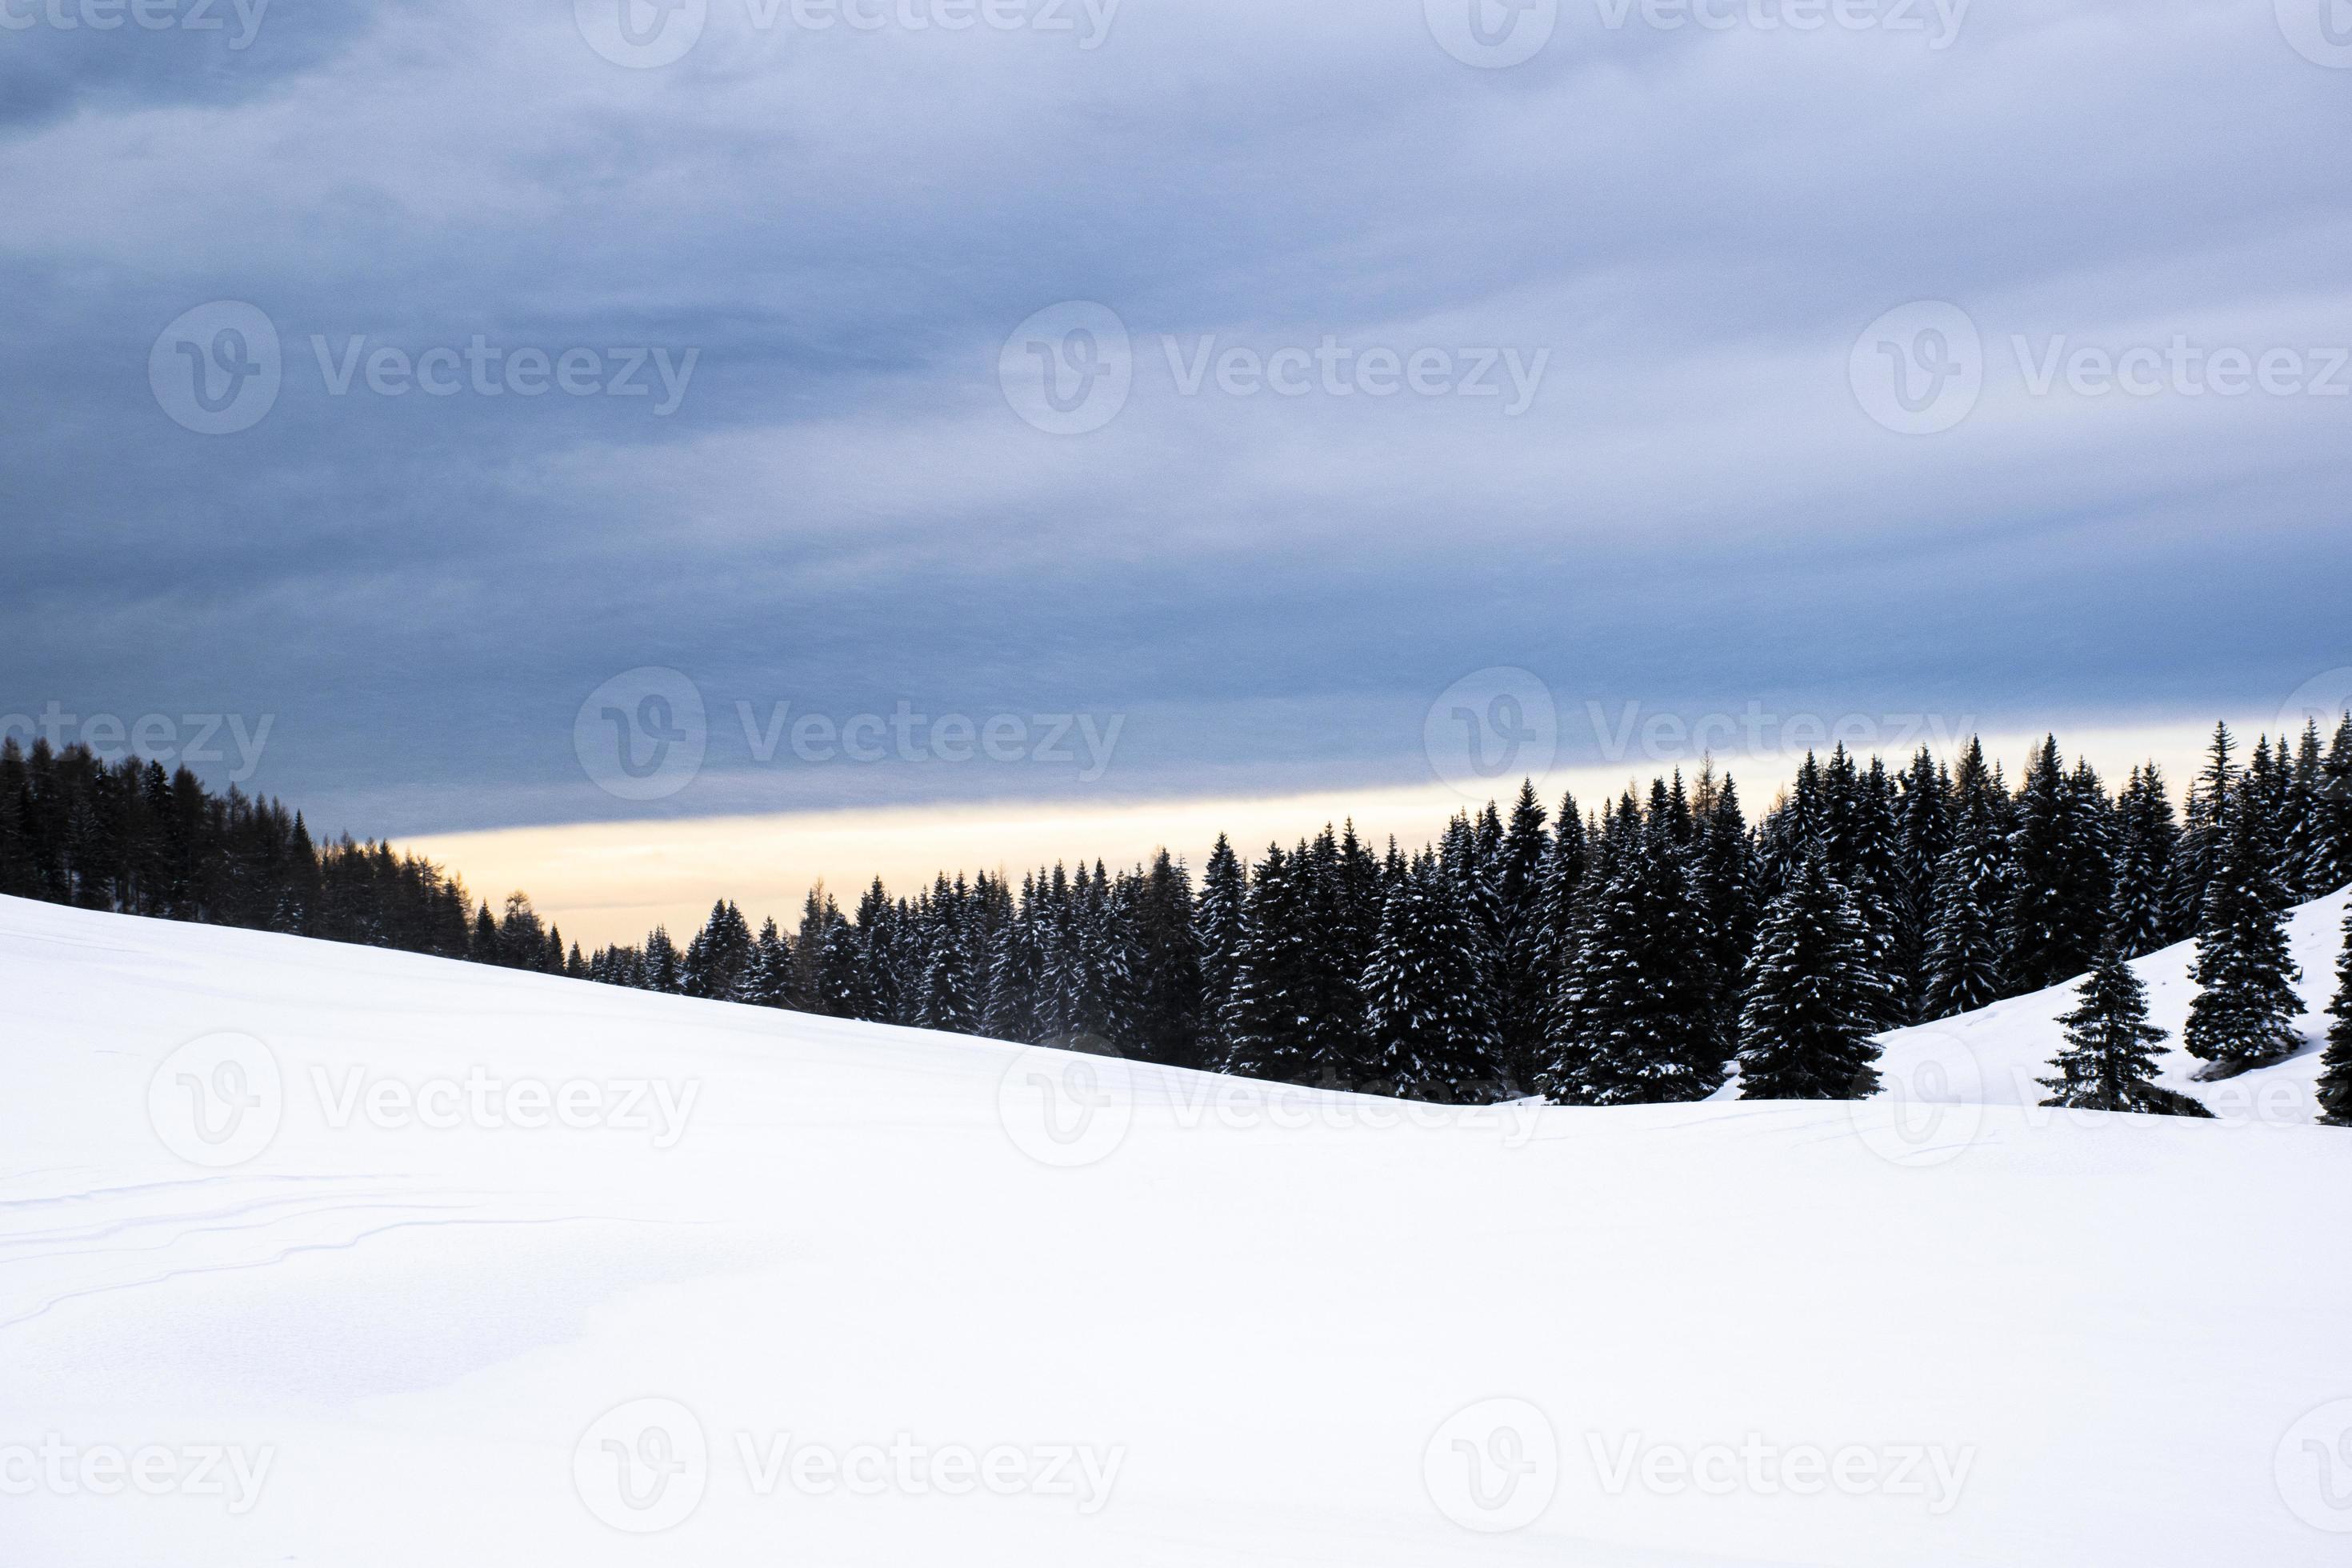 porta manazzo in de winter met sneeuw en pijnbomen foto